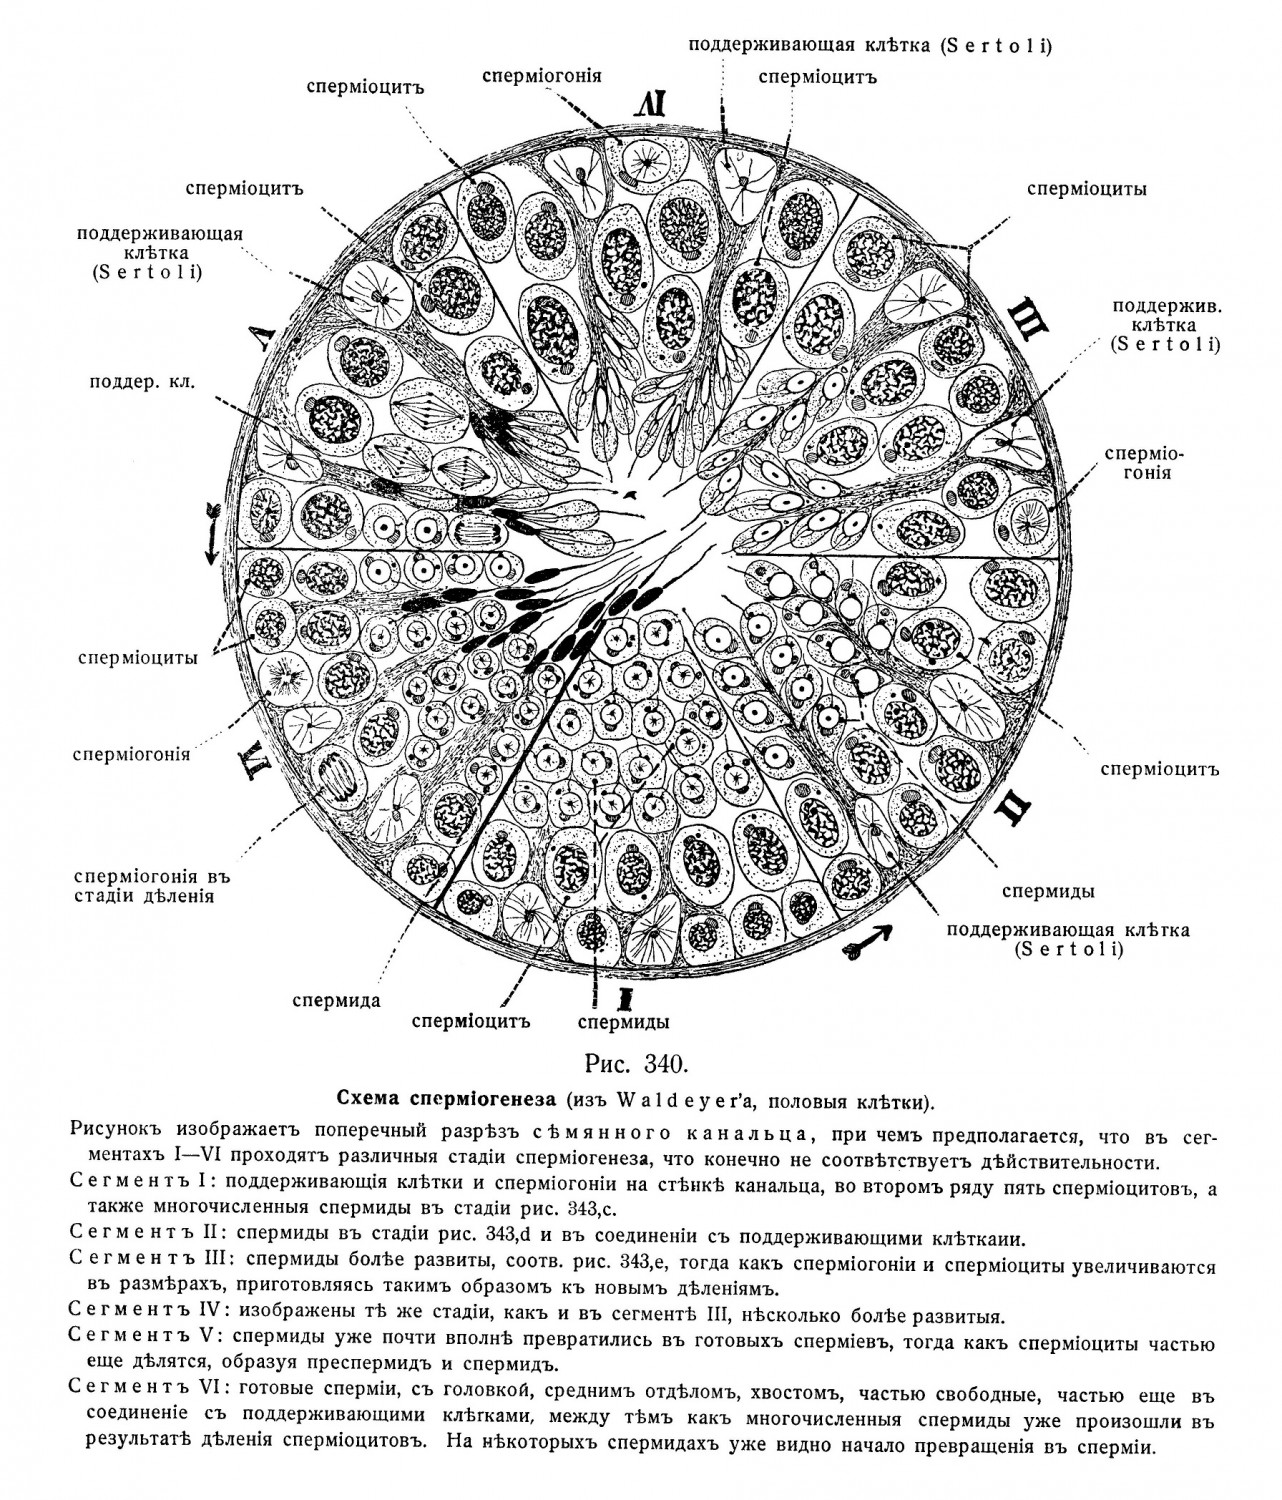 Схема спермиогенеза